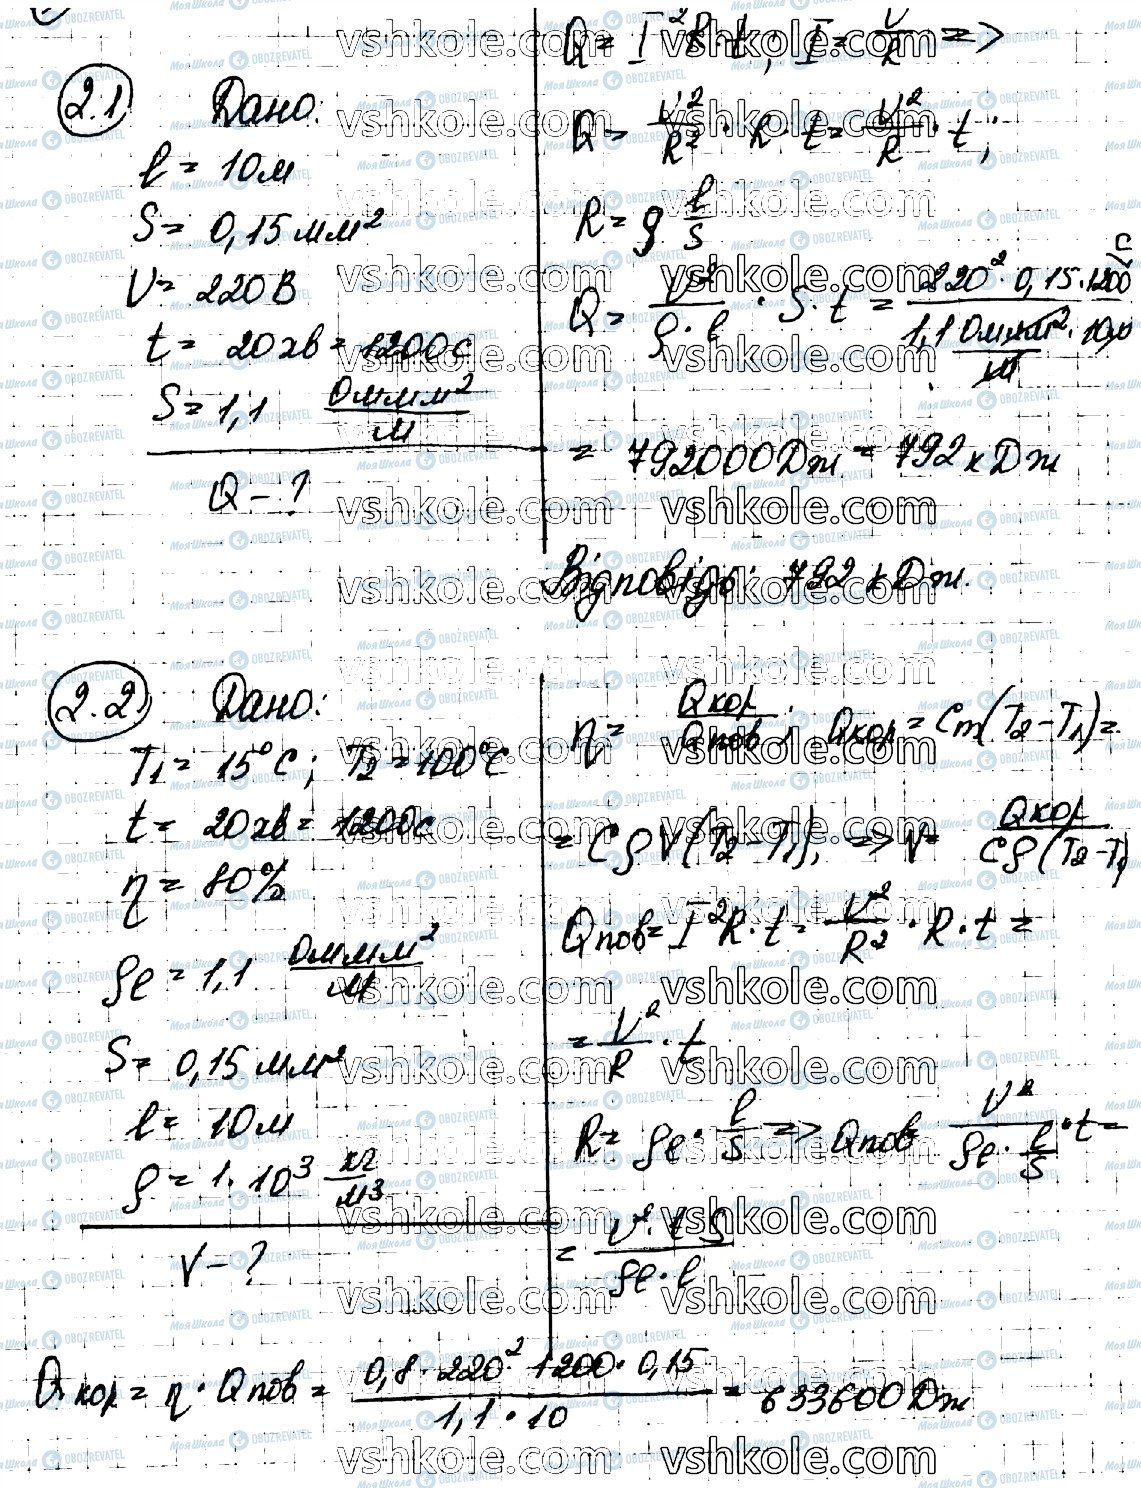 ГДЗ Фізика 11 клас сторінка 2